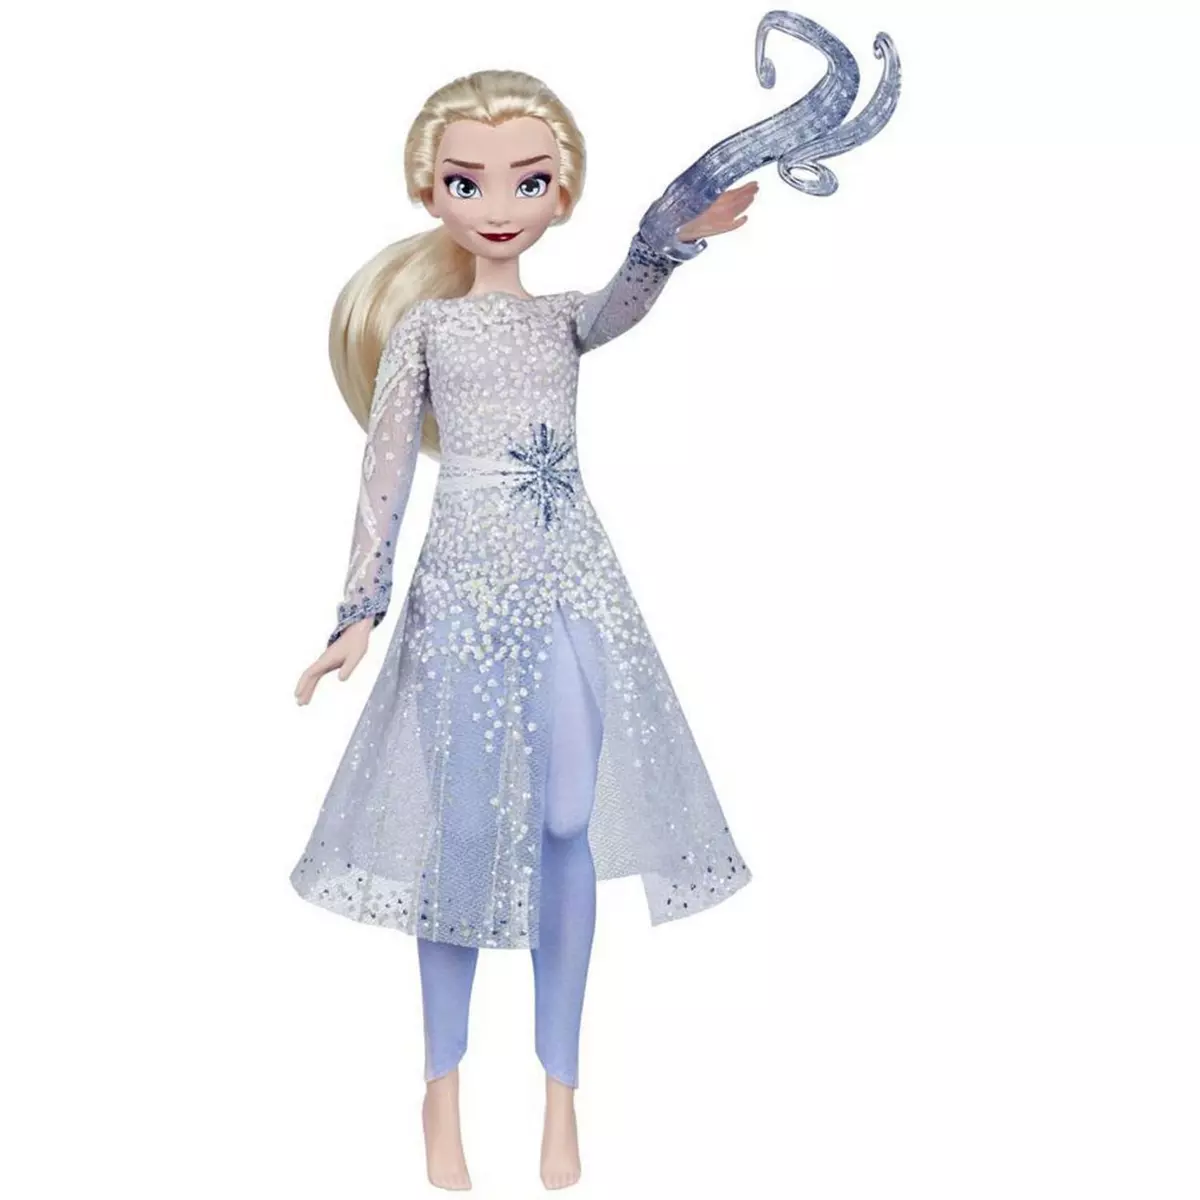 HASBRO Poupée Elsa son et lumière - Reine des neiges 2